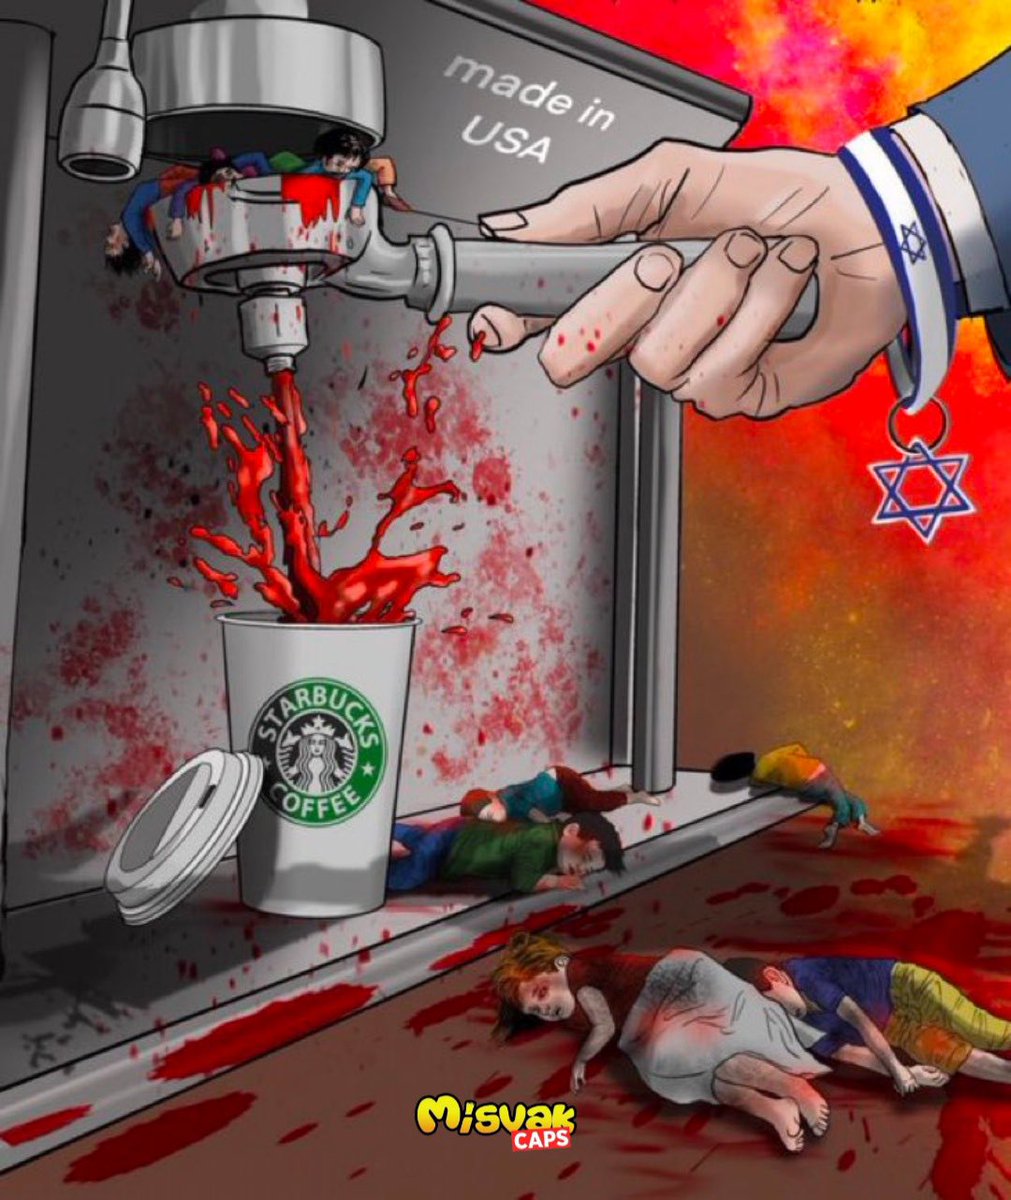 Karton kutudaki 5 liralık kahveyi 90 liraya alıp, Olimpiyat Meşalesi gibi elinde gezdirdiğinde kendini Lord zannedenlere: Zalim İsrail; genç-yaşlı, çocuk-bebek, Müslüman-Hristiyan demeden soykırım yapıyor ve Starbucks denen firma bu katliama destek oluyor. #GenocideSupporters